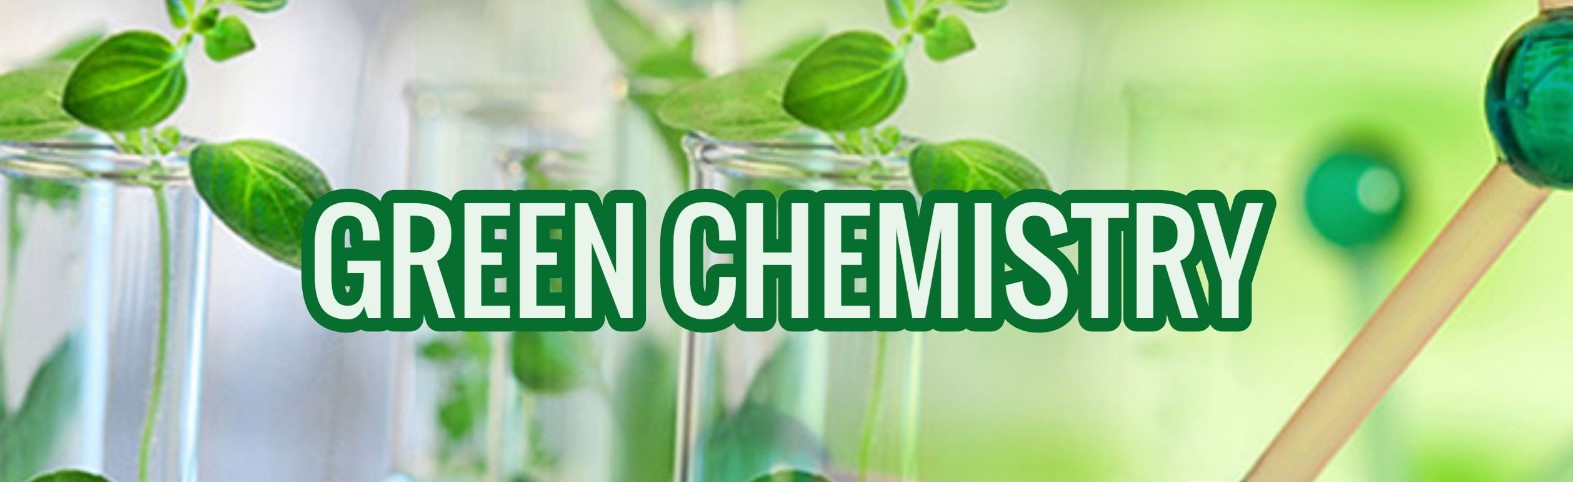 ทุนวิจัย PhosAgro/UNESCO/IUPAC  Grants for Research Project in Green Chemistry